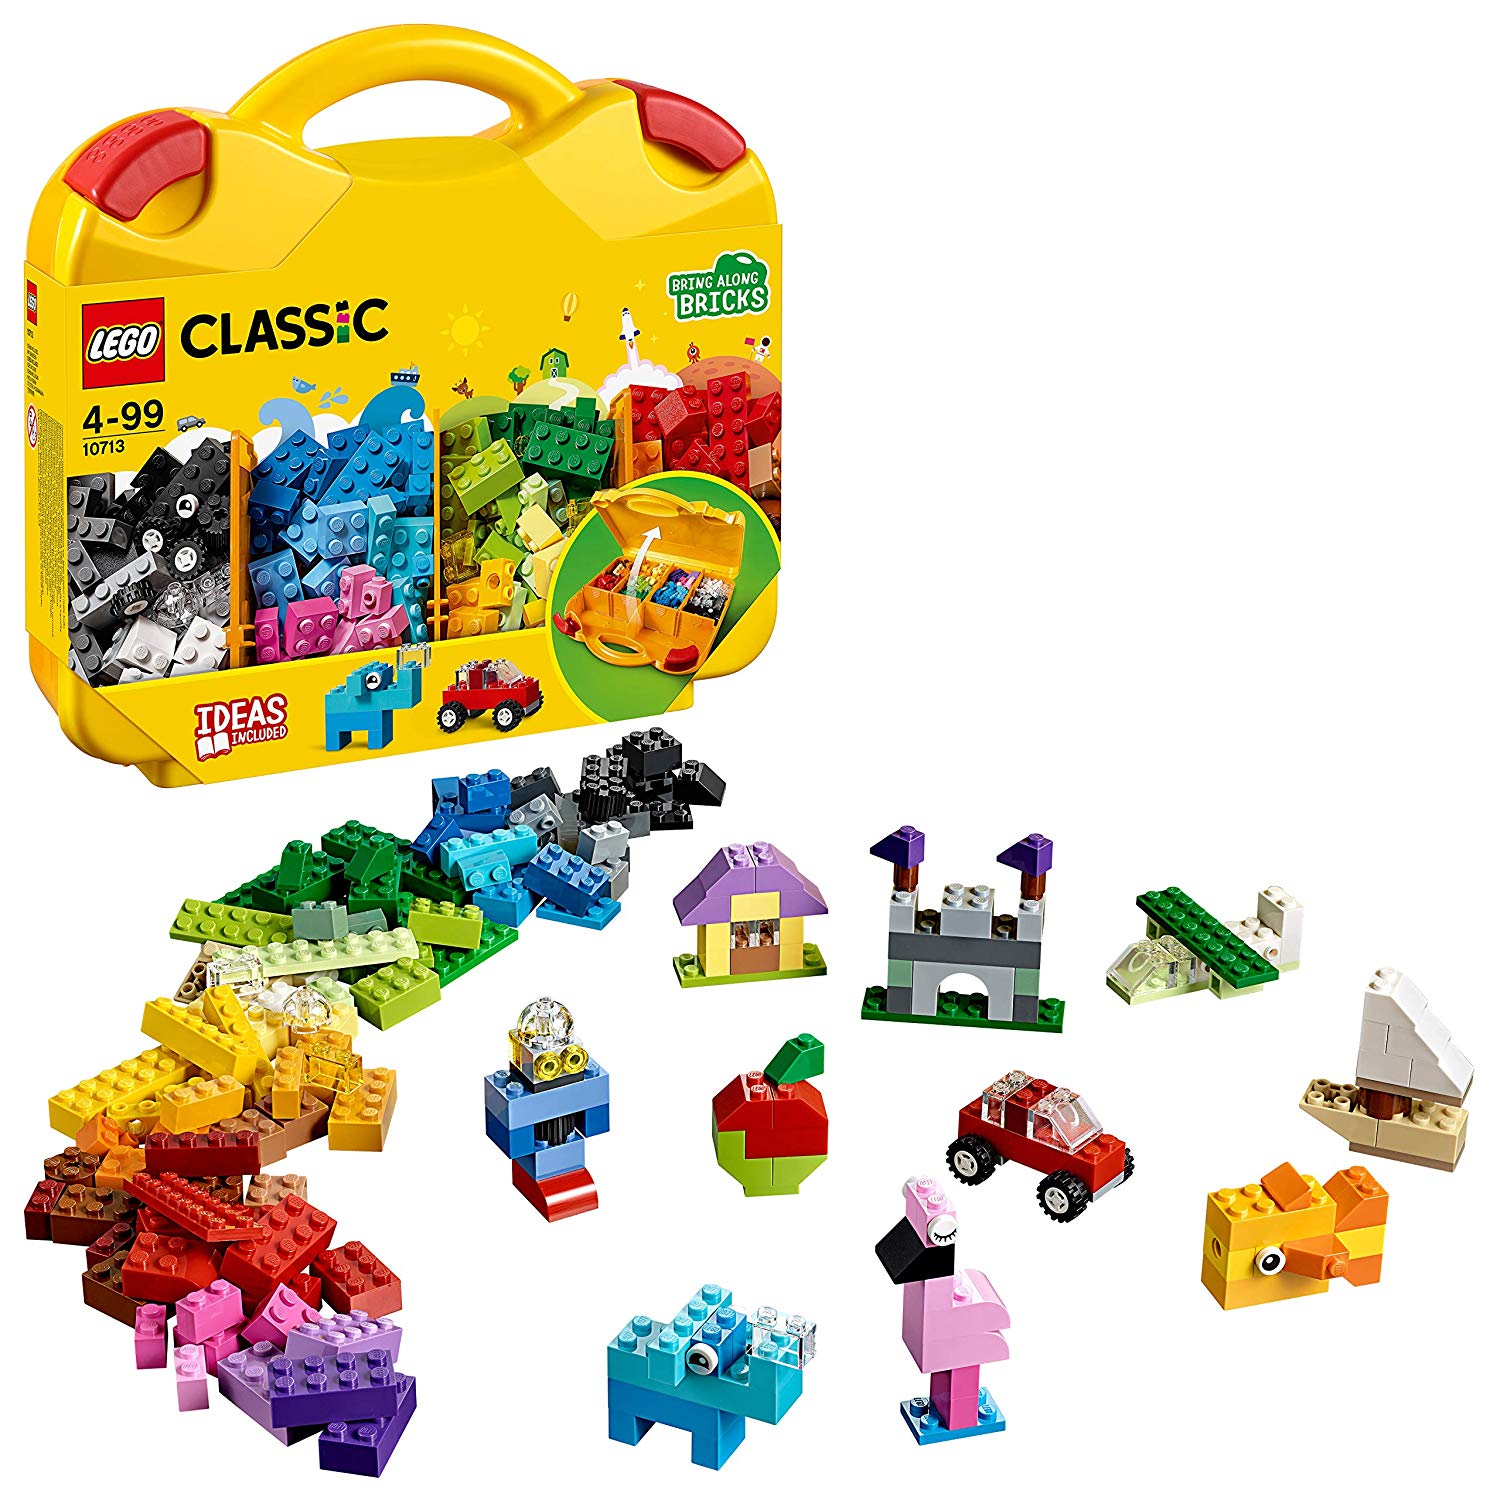 Creative suitcase LEGO Classic 10713